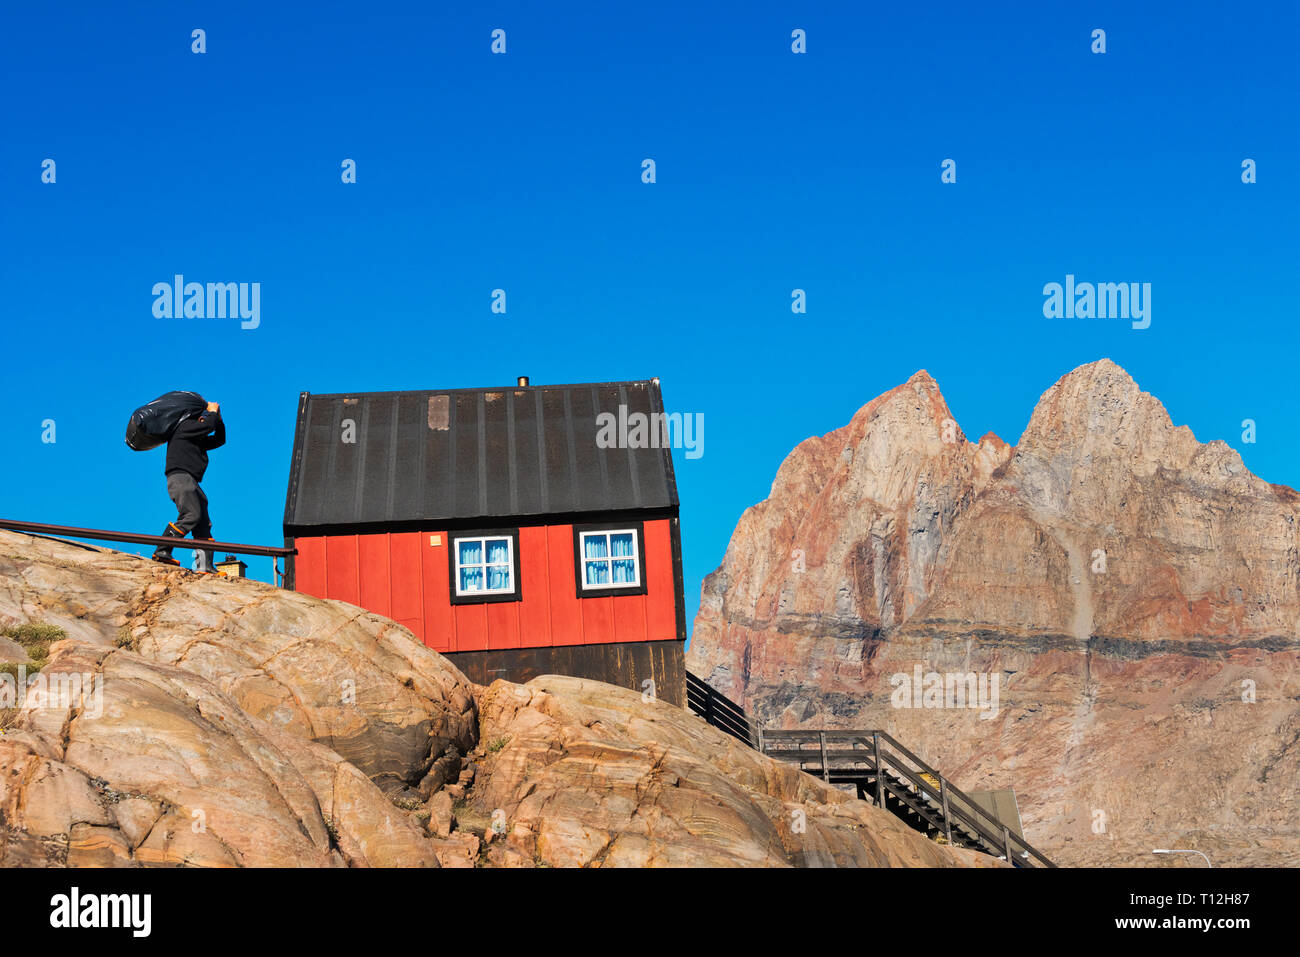 Maison peint de couleurs vives, sur l'île, Uummannaq (Groenland) Banque D'Images